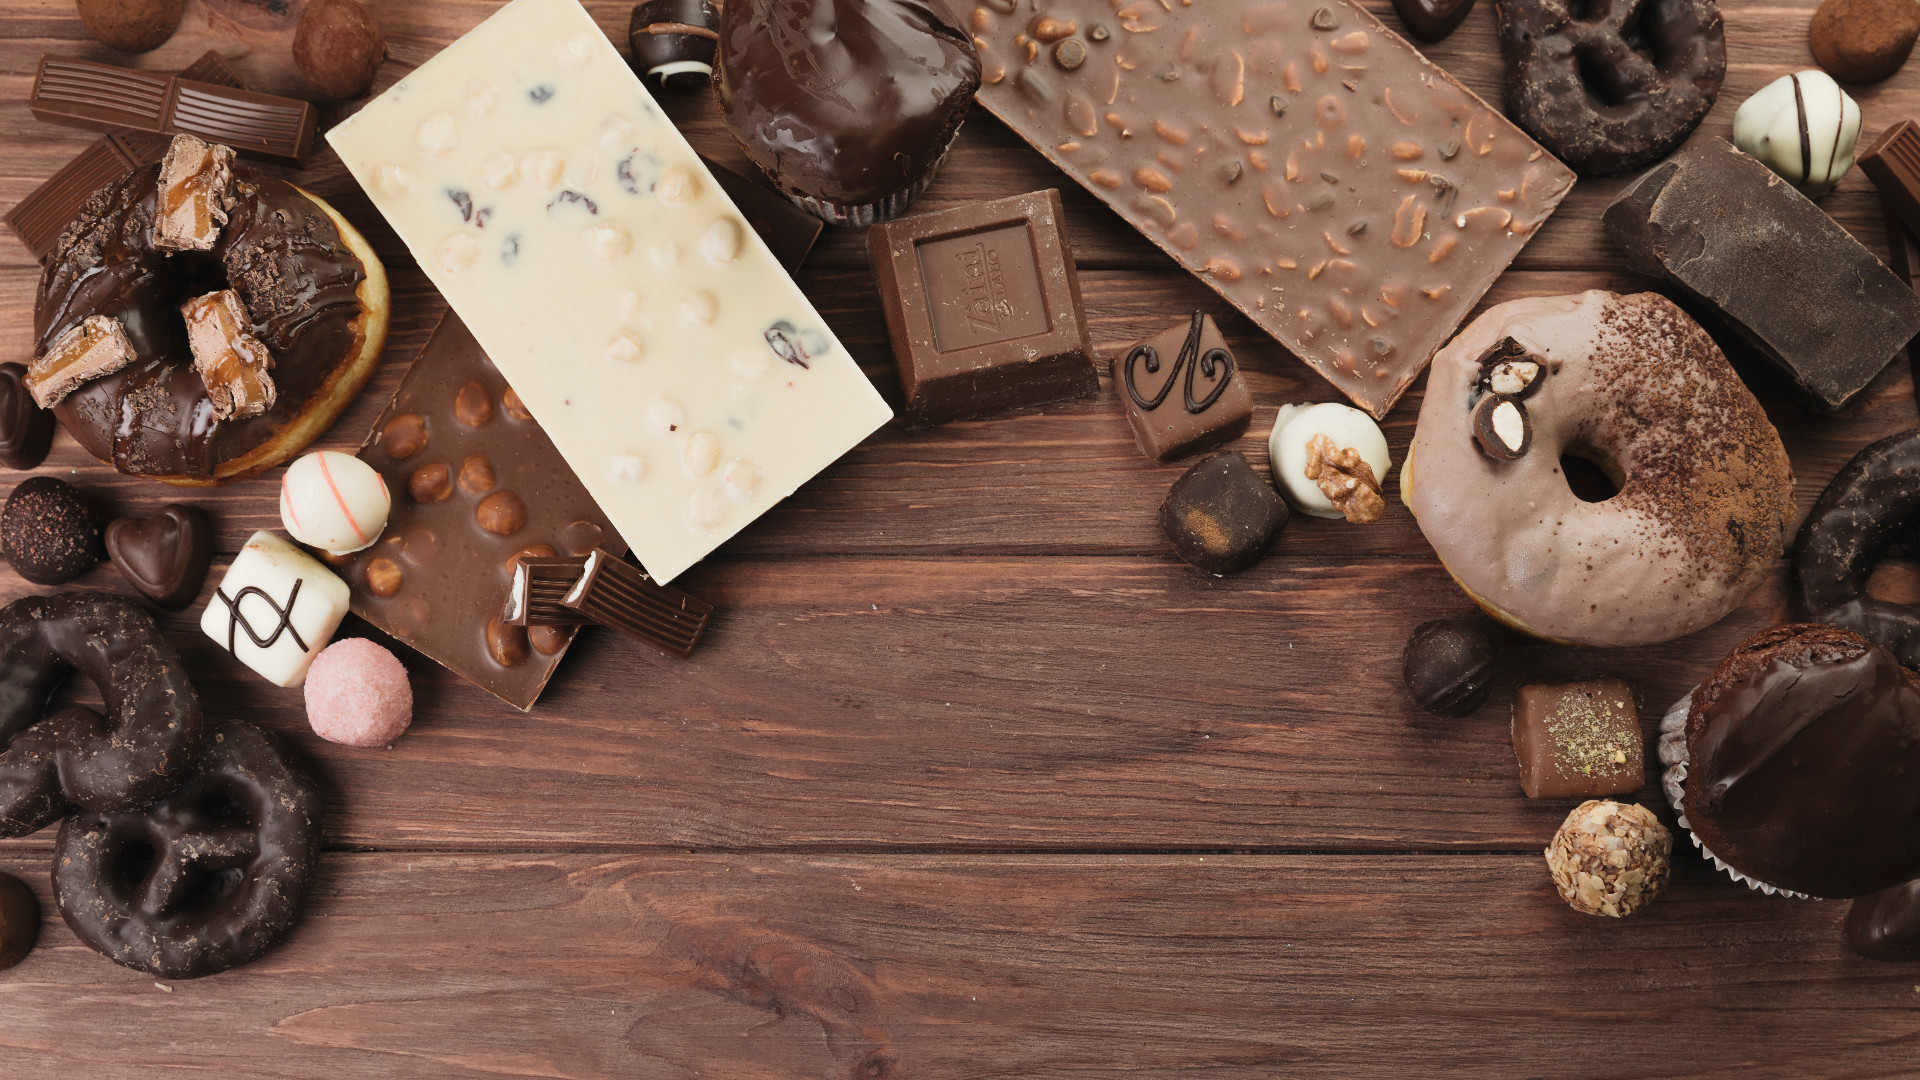 Foto de capa do artigo "Tipos de chocolate: têm diferença? Qual a composição?"